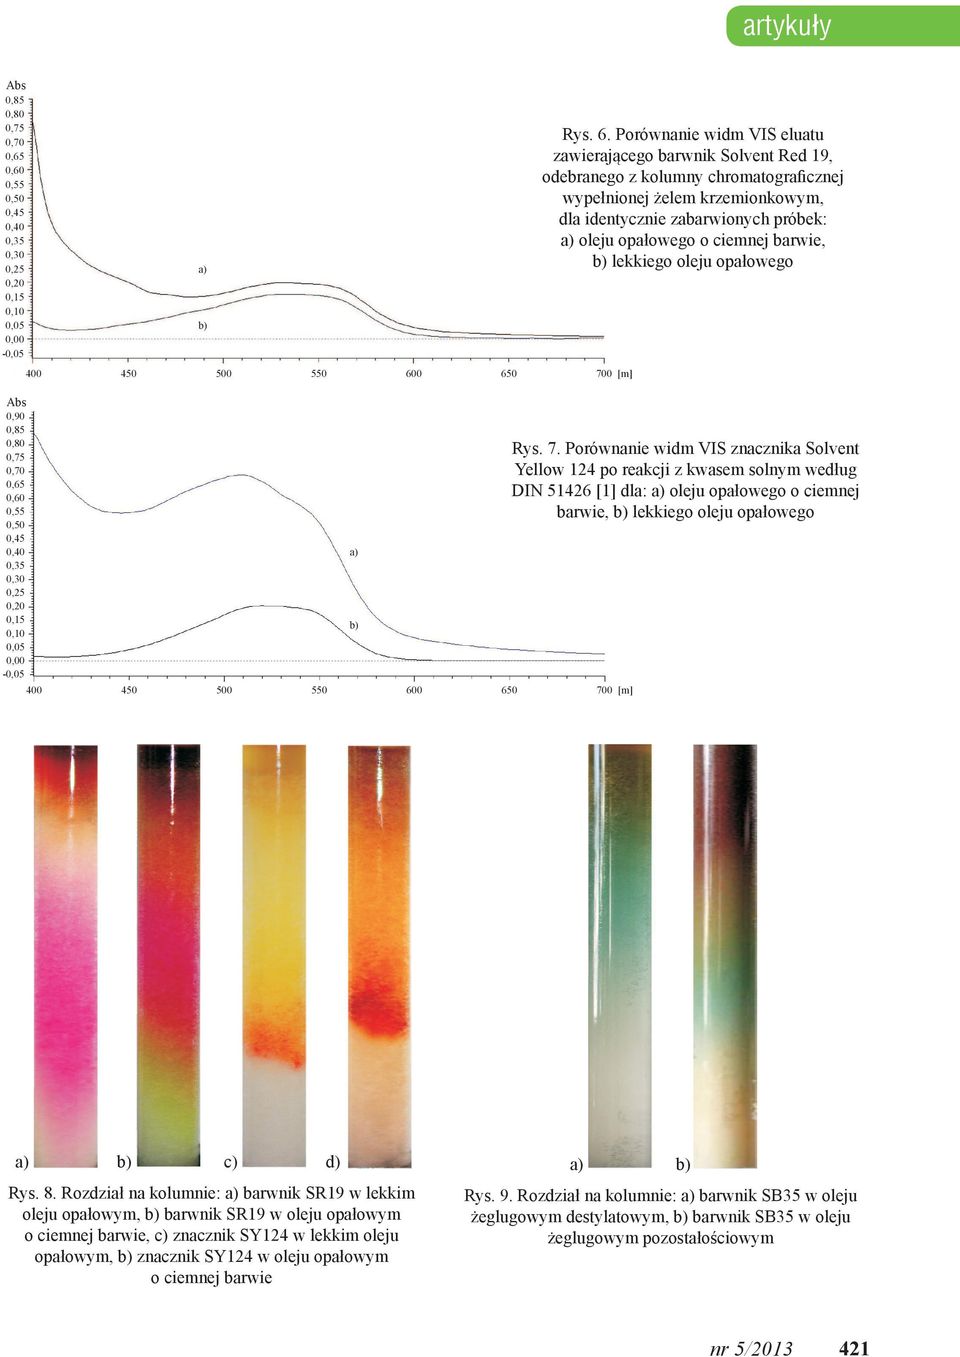 Porównanie widm VIS eluatu zawierającego barwnik Solvent Red 19, odebranego z kolumny chromatograficznej wypełnionej żelem krzemionkowym, dla identycznie zabarwionych próbek: a) oleju opałowego o